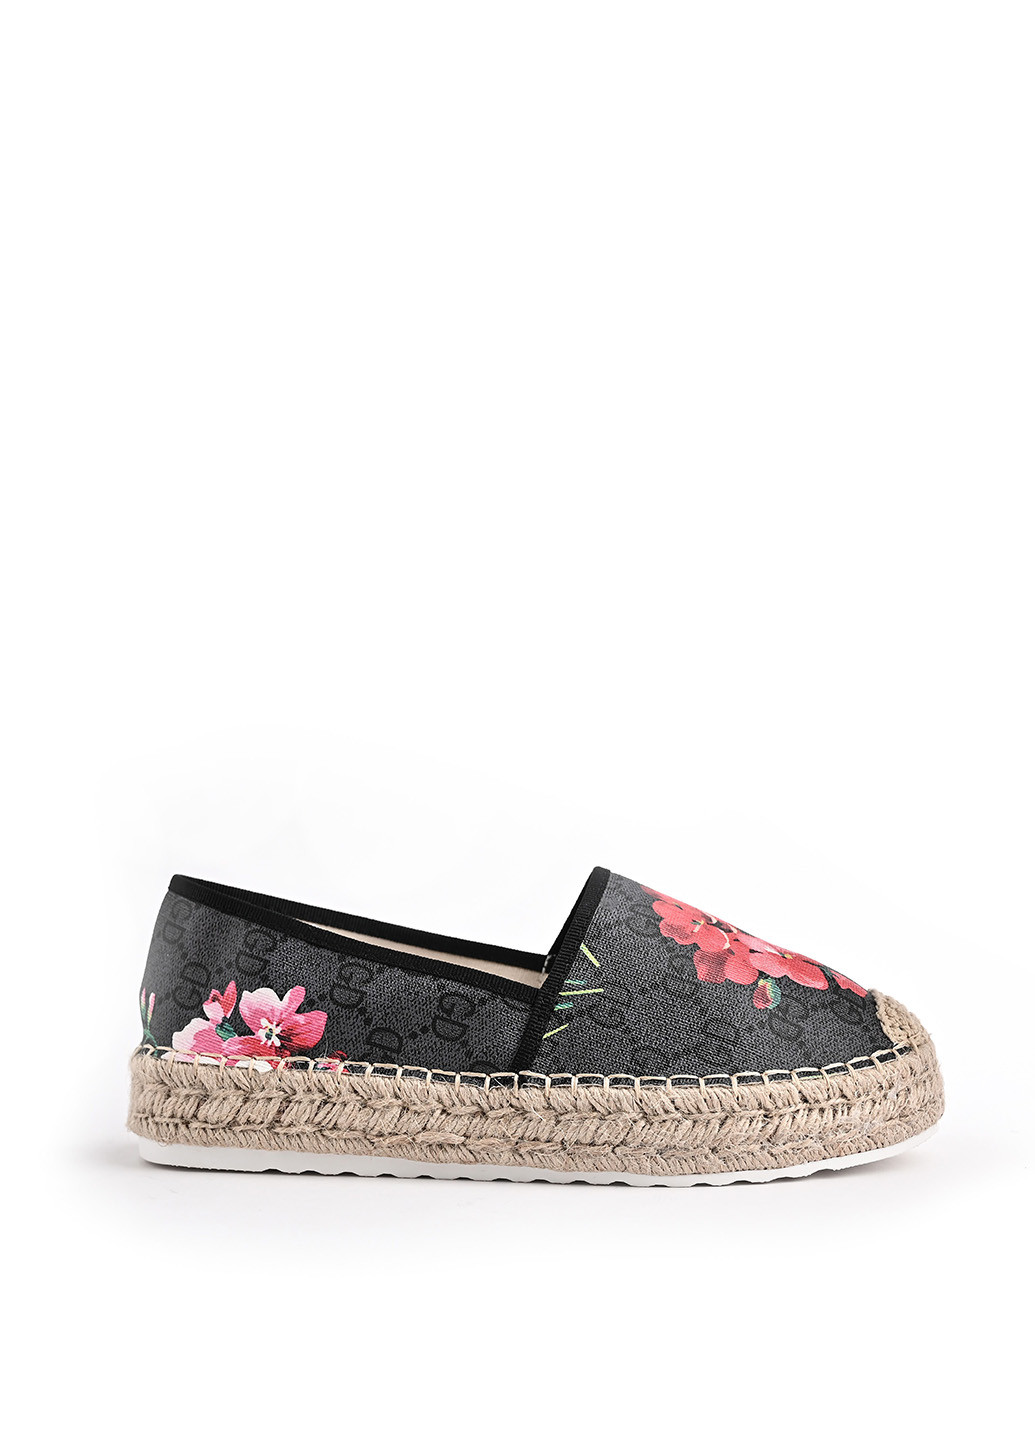 Черные эспадрильи Top Shoes с цветами плетение, на плетеной подошве